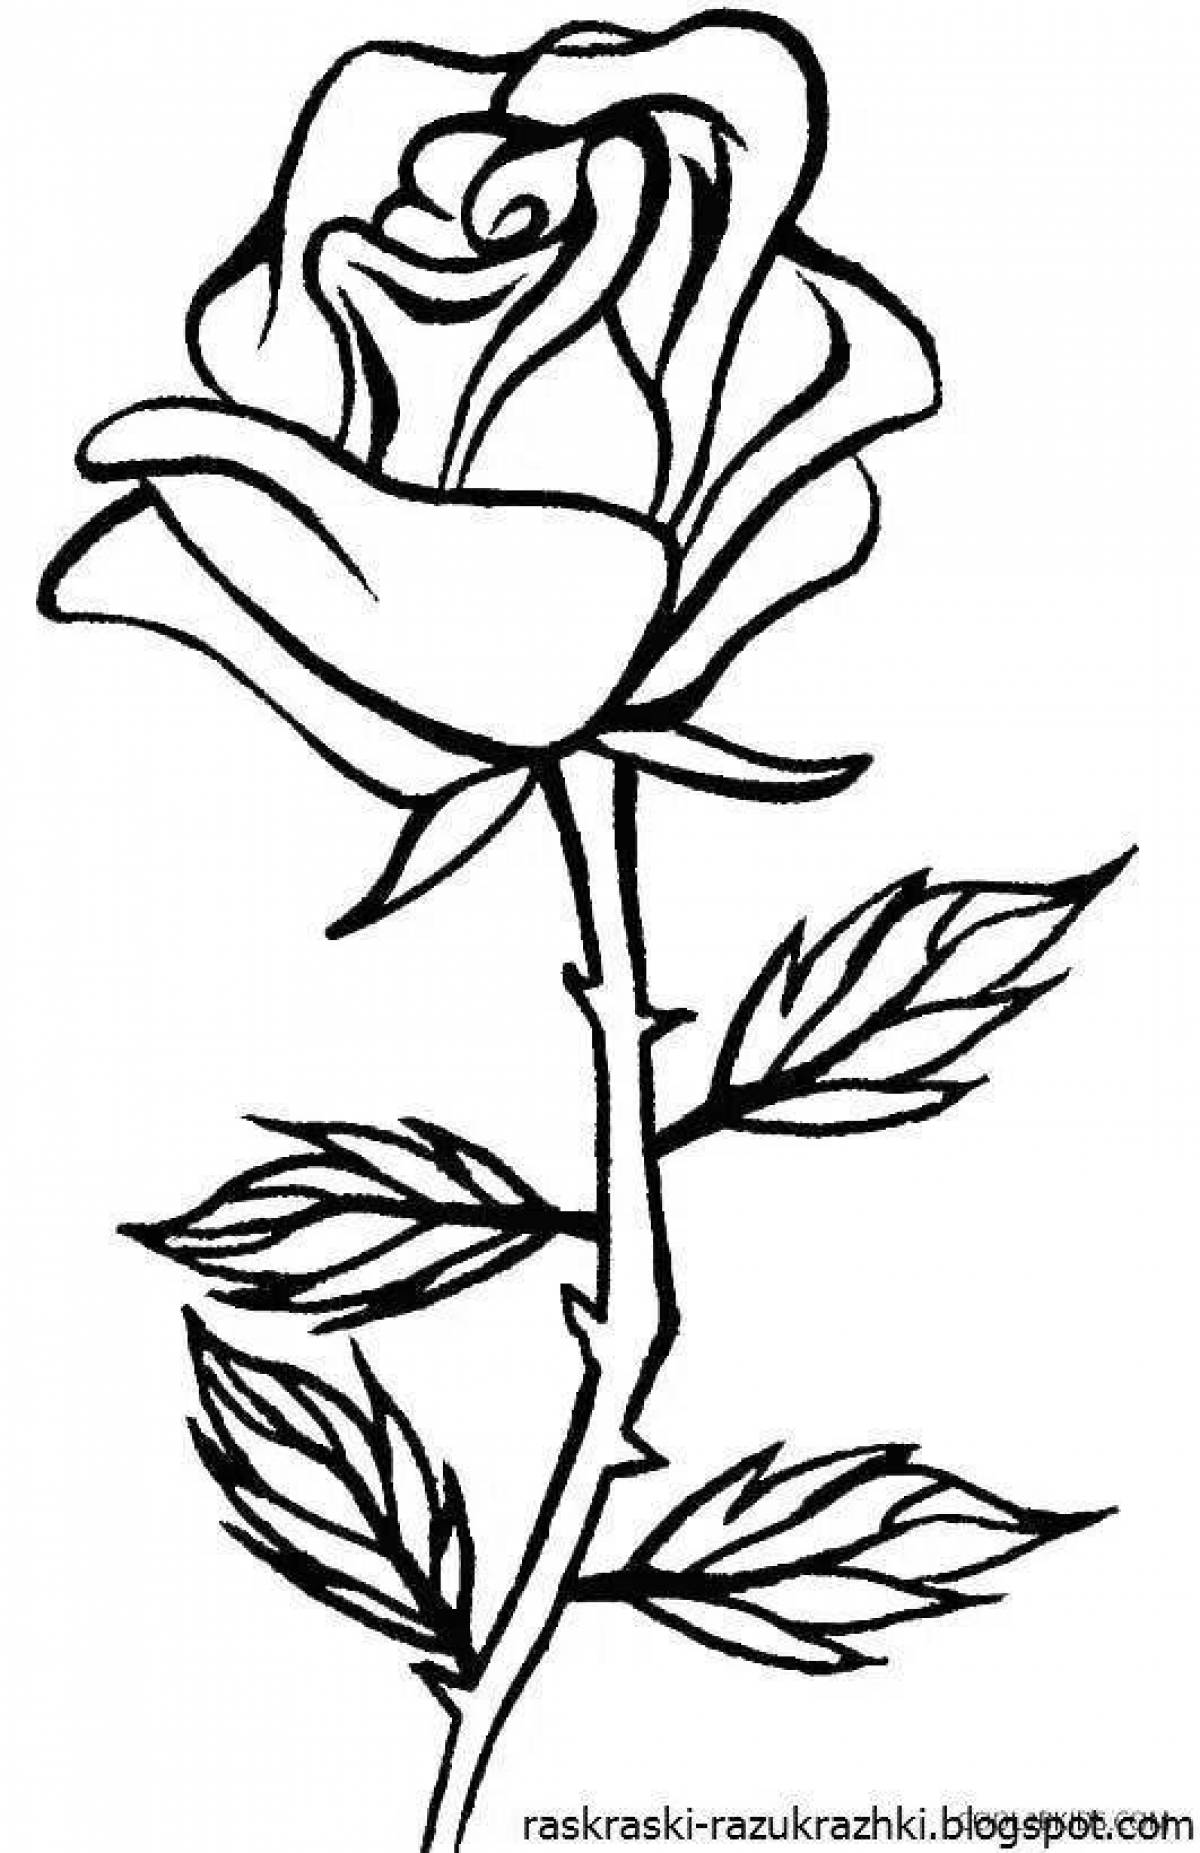 Элегантная раскраска рисунок розы